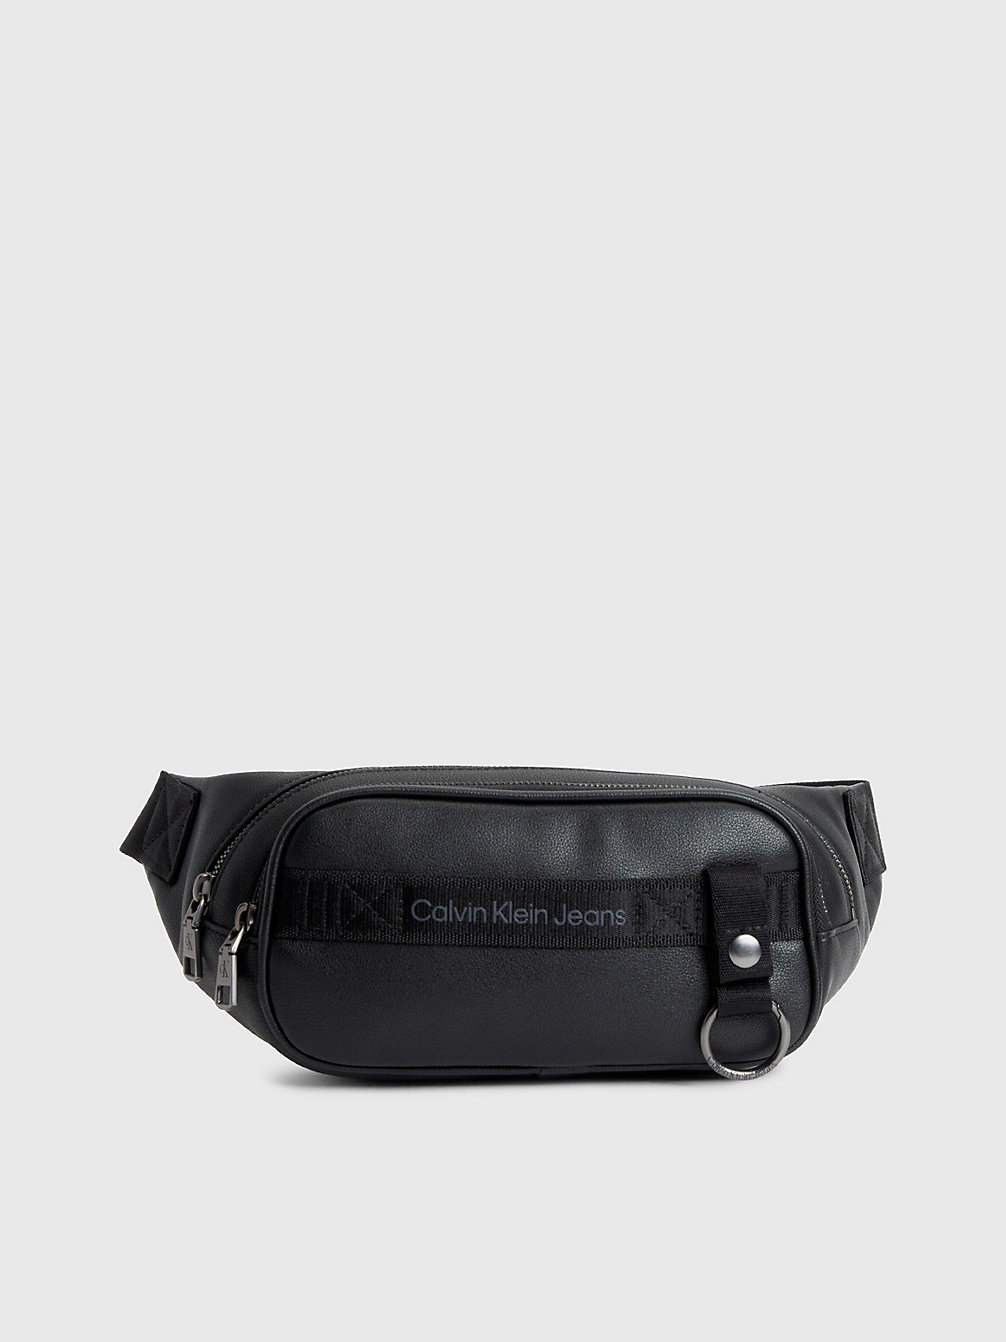 BLACK Bum Bag undefined men Calvin Klein